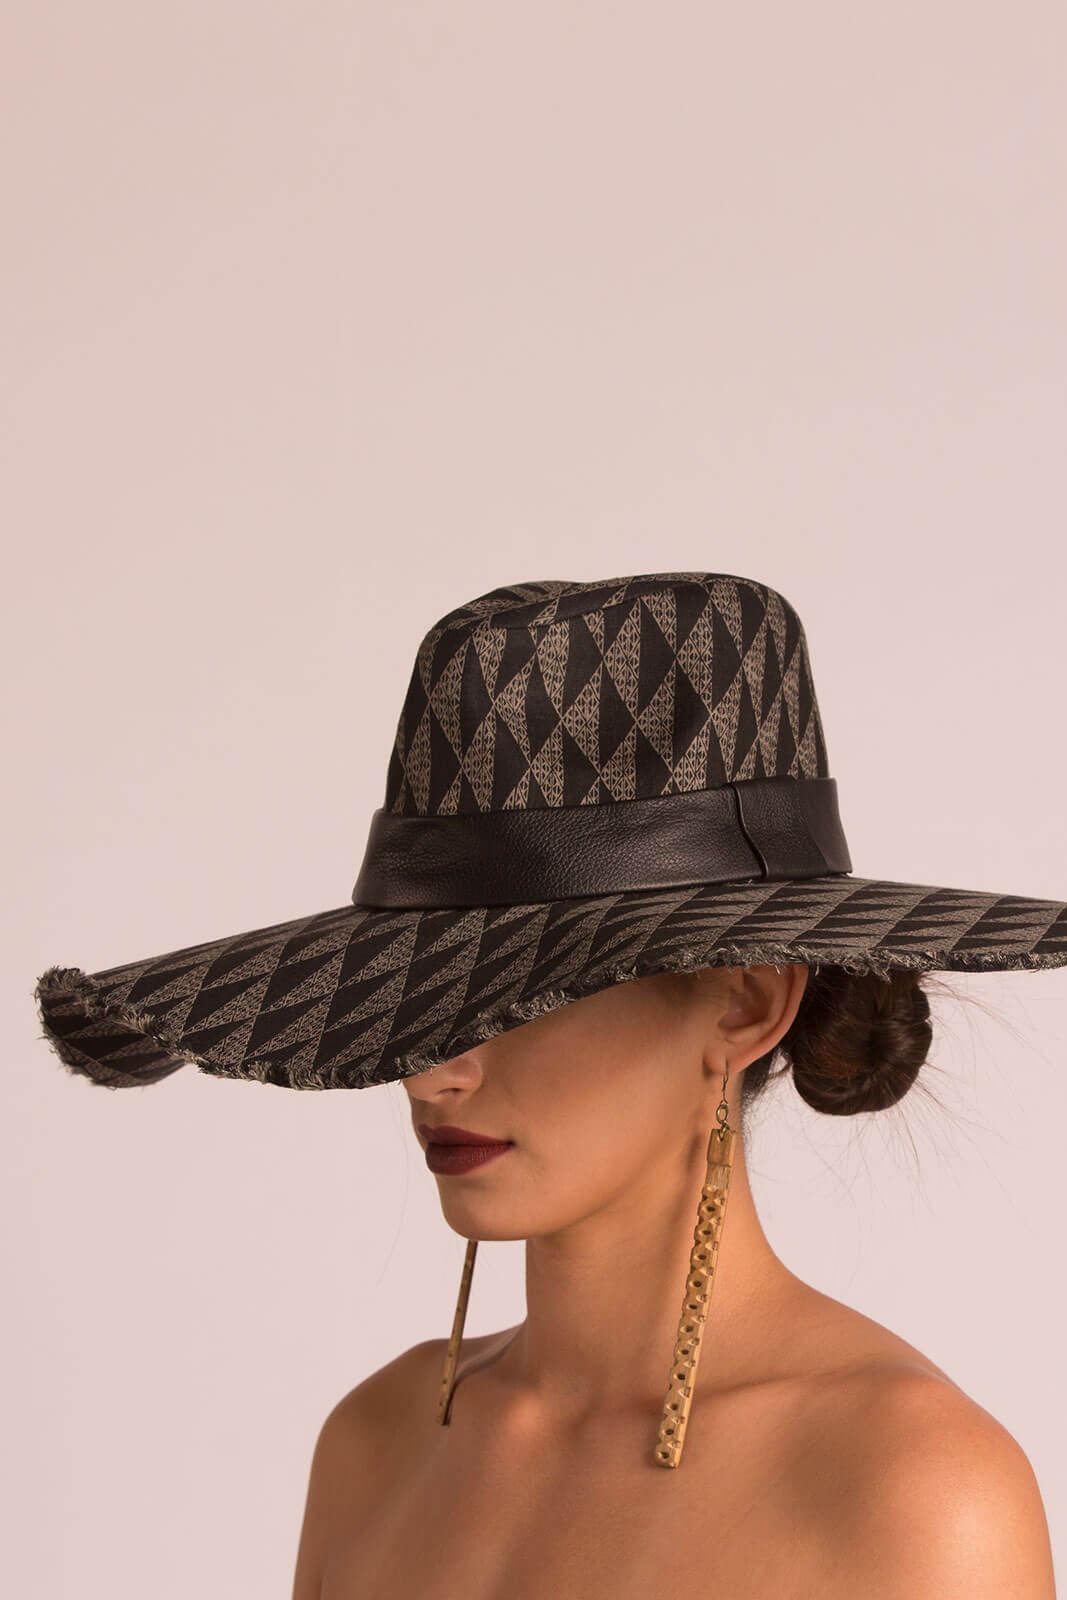 Female model wearing a black hat